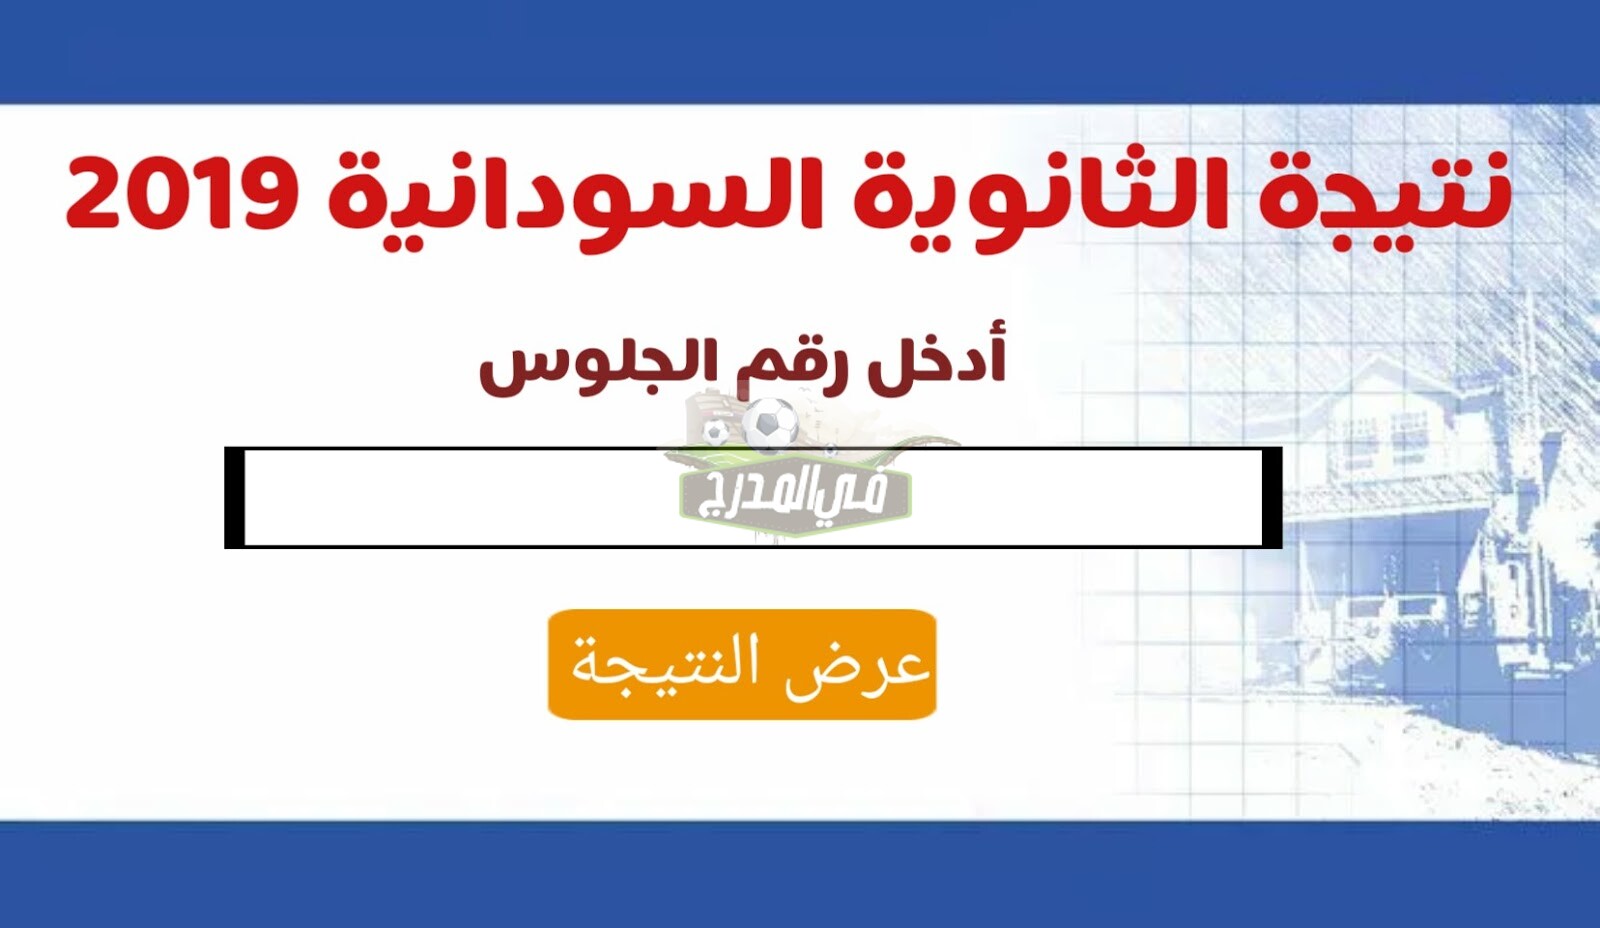 نتيجة الشهادة الثانوية السودانية بالرقم الوطني عبر موقع وزارة التربية والتعليم